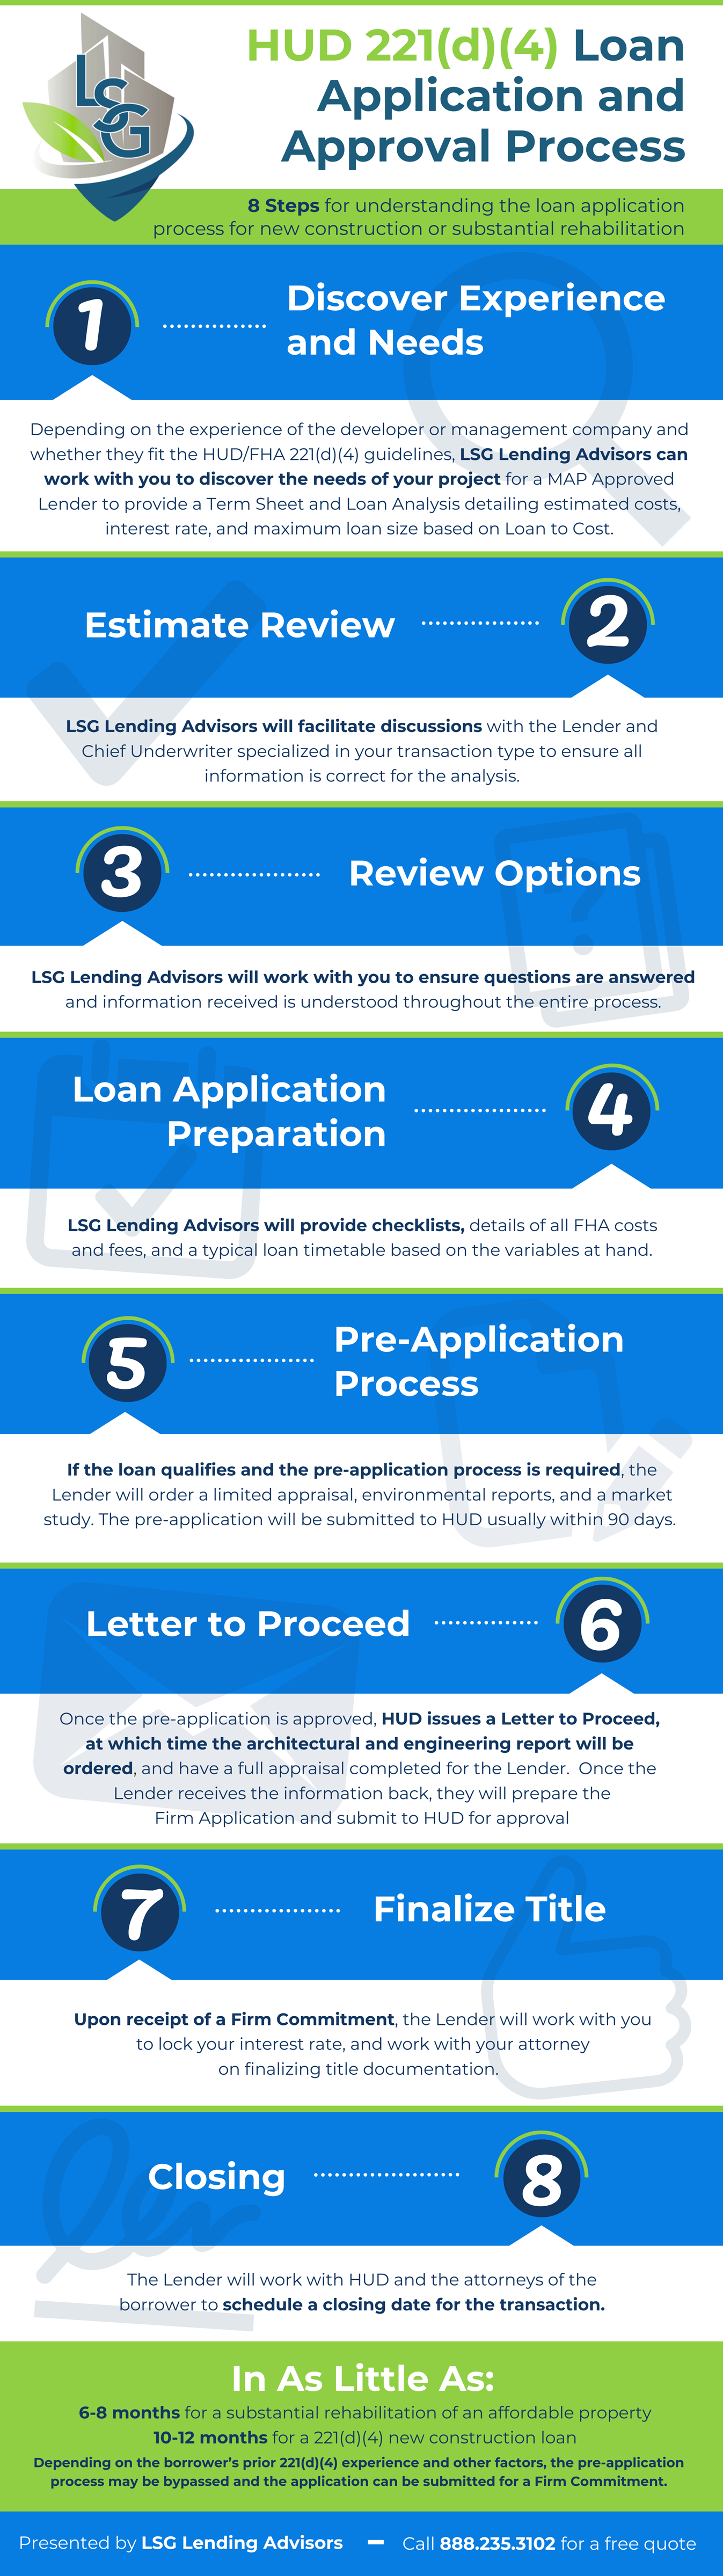 LSG_FAQ_HUD_221(d)(4)_loan_process